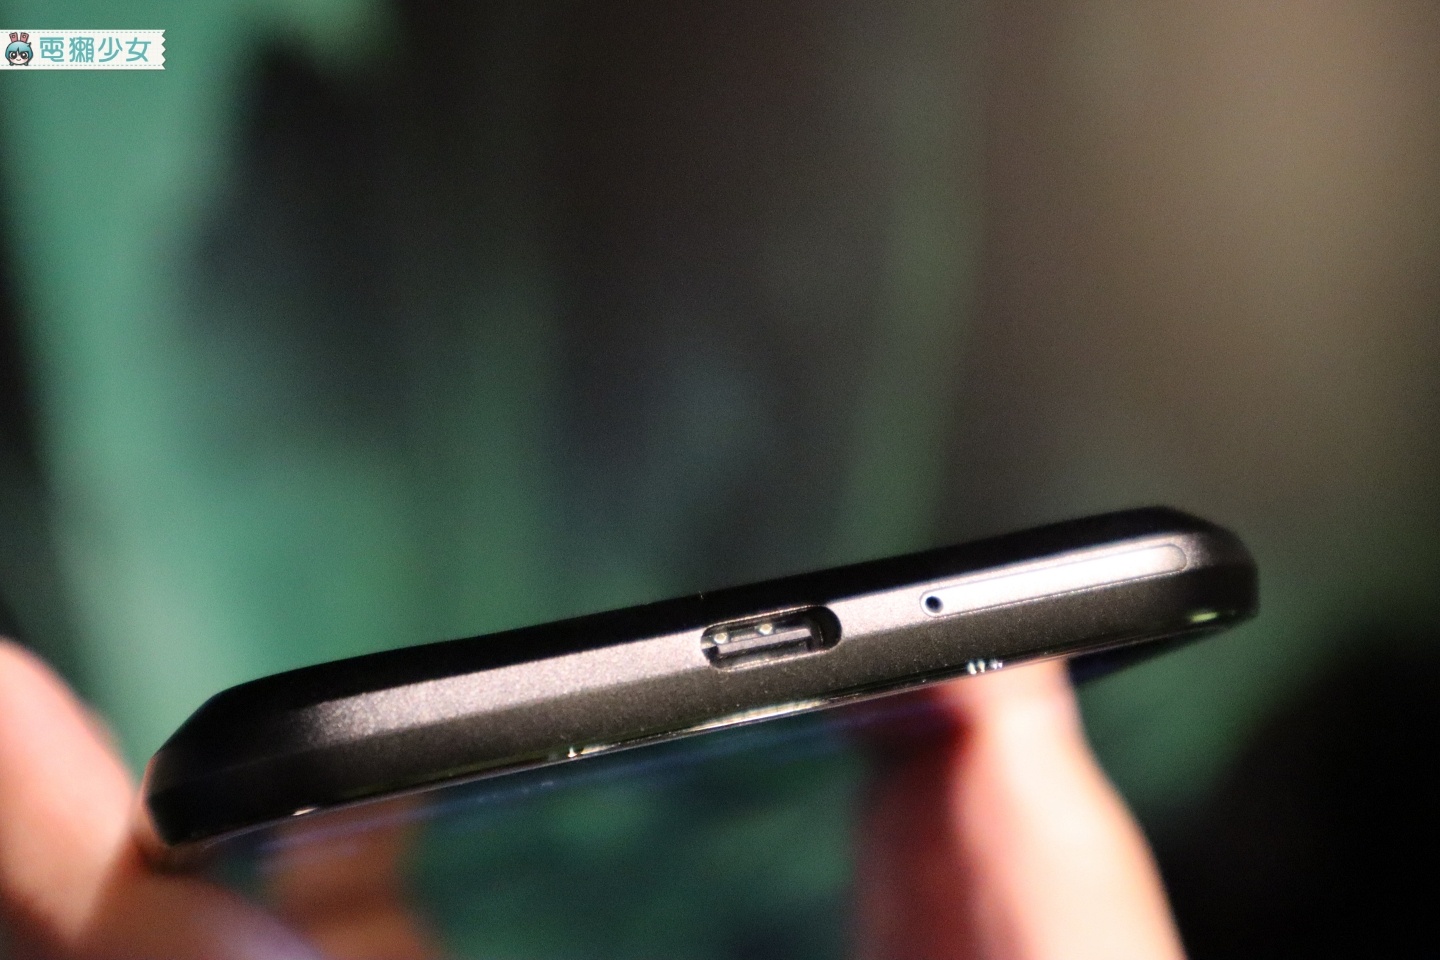 『 黑鯊遊戲手機2 』台灣開放預購！18,990元起 有12GB+256GB的選擇